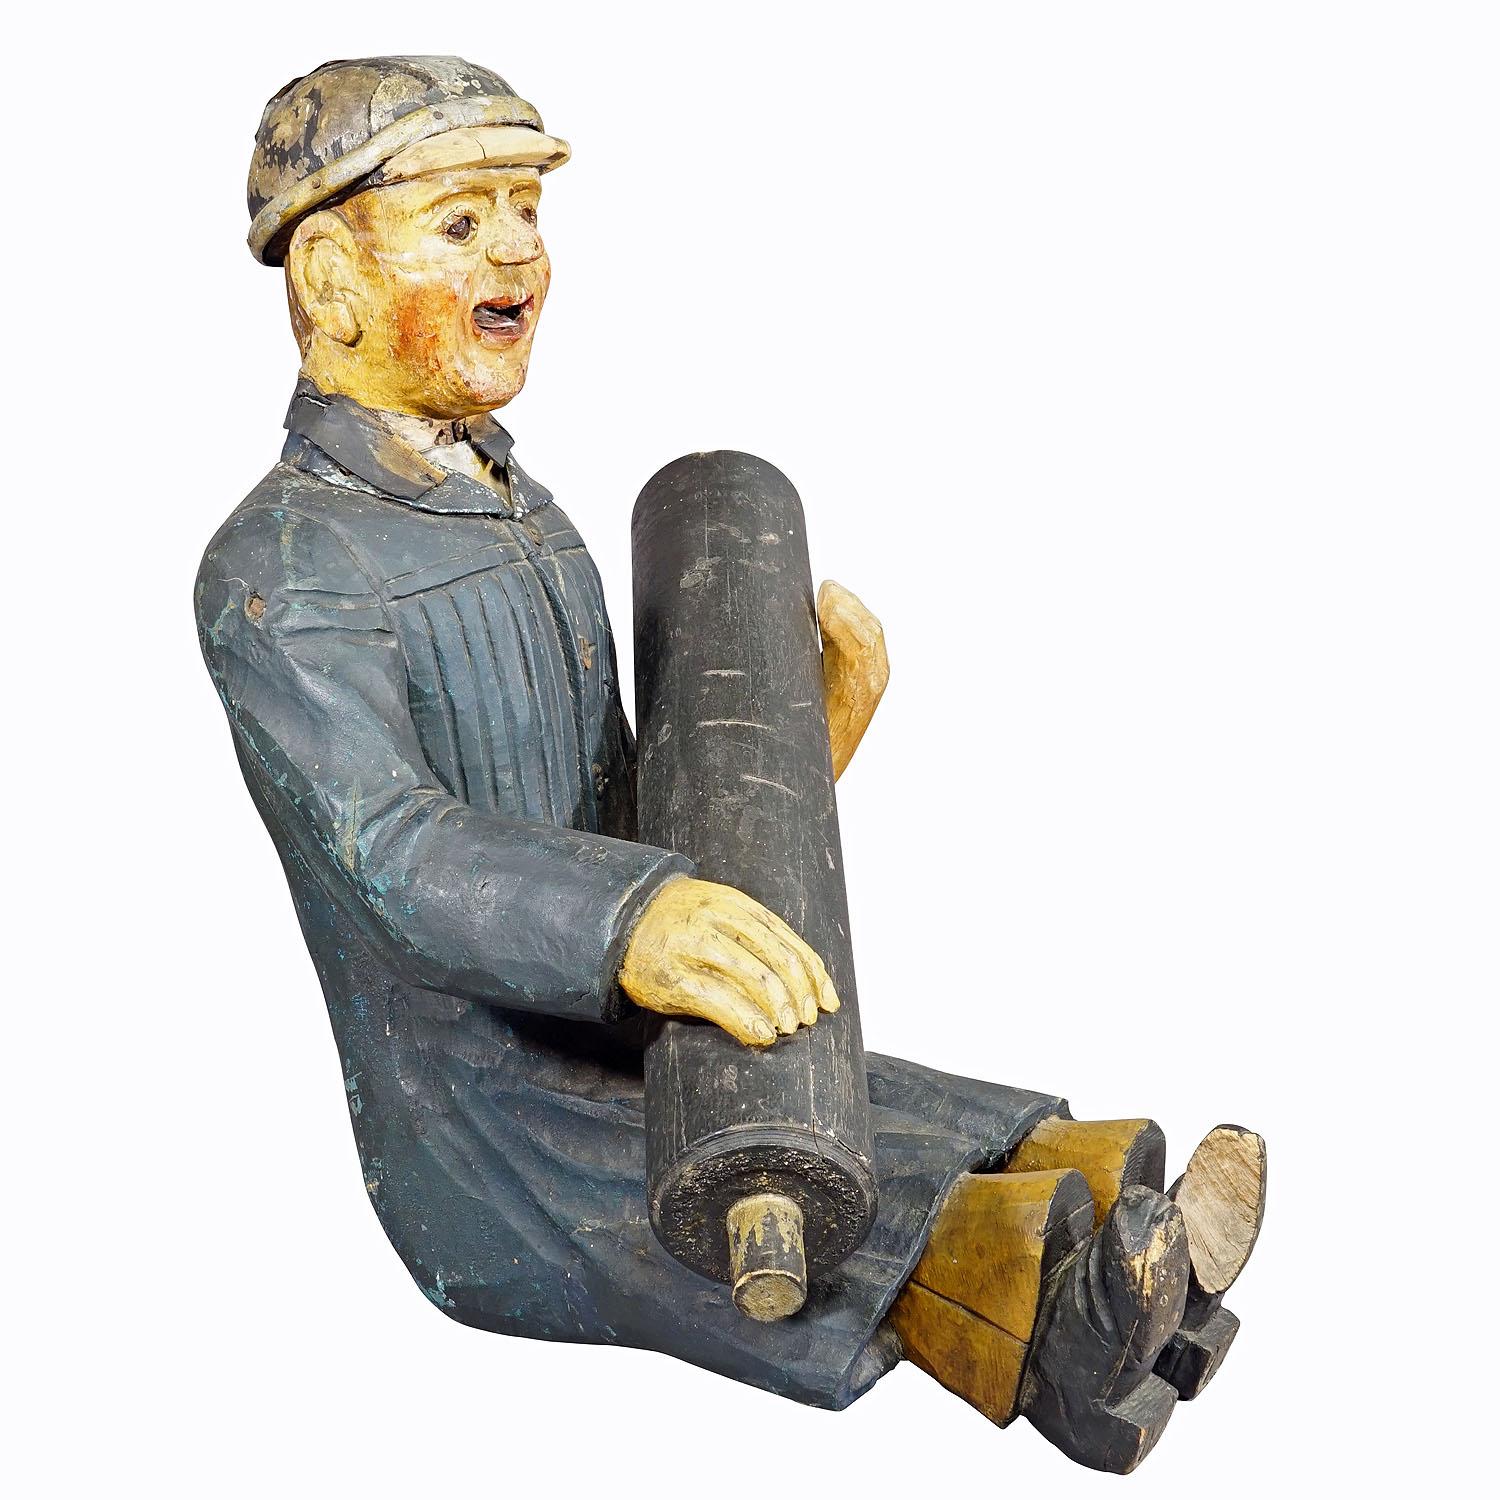 Fireman d'antiquités d'un manège pour enfants, Allemagne, années 1920

Sculpture antique en bois représentant un pompier. Anciennement utilisé comme décoration pour le camion de pompiers d'un carrousel d'enfants bavarois. La tête est munie d'un